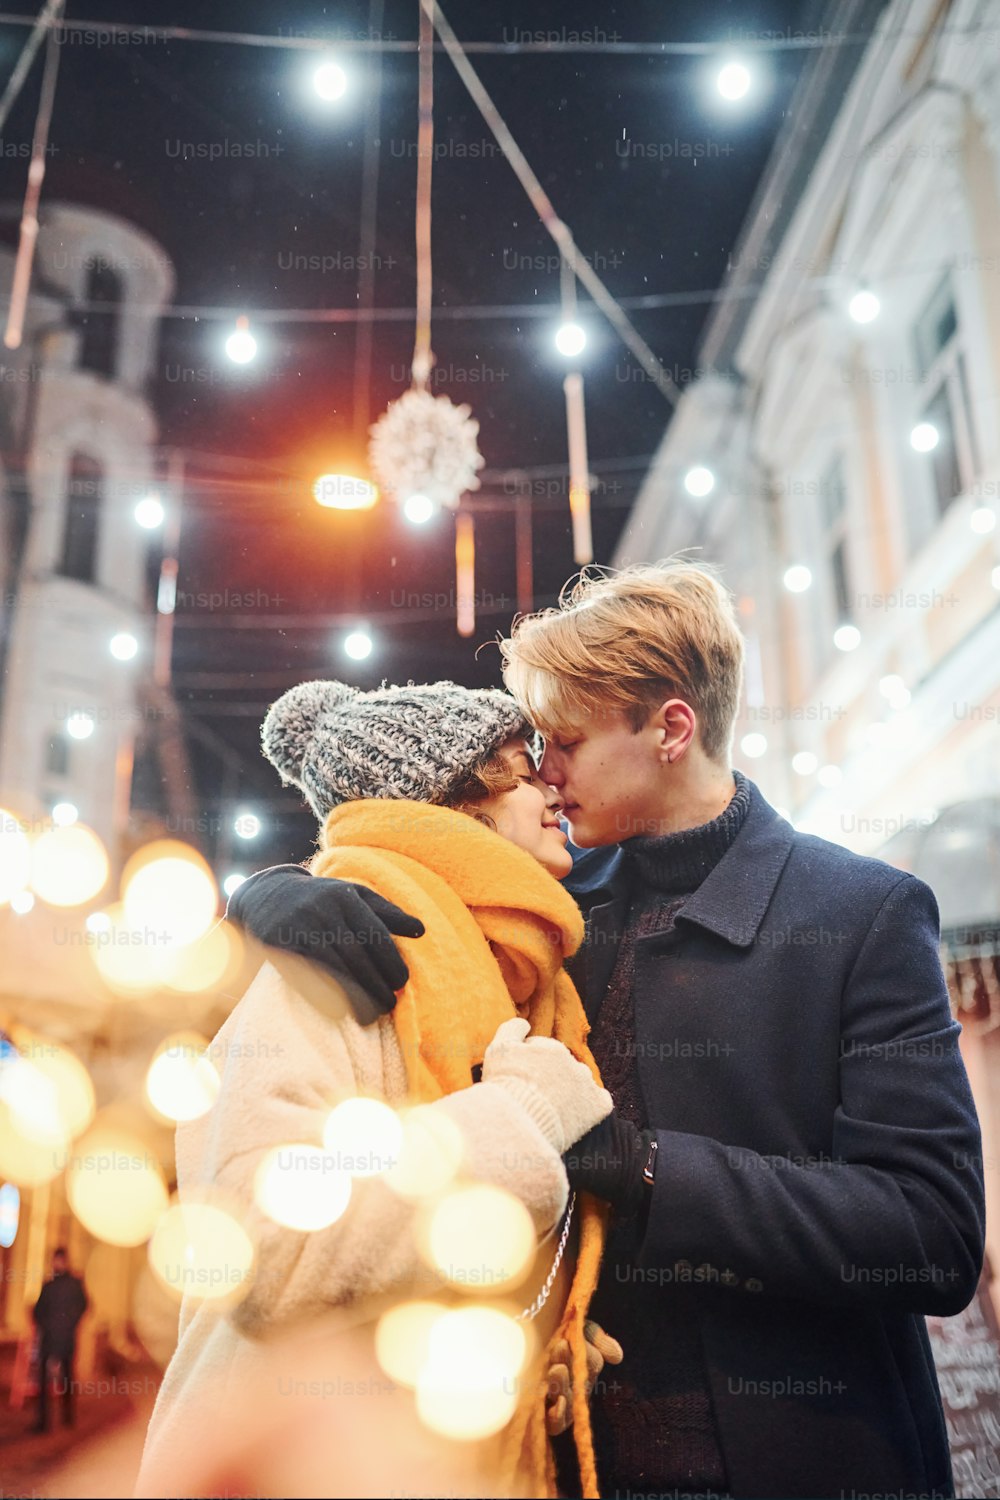 크리스마스 장식 거리에서 키스하는 따뜻한 옷을 입은 젊은 커플.